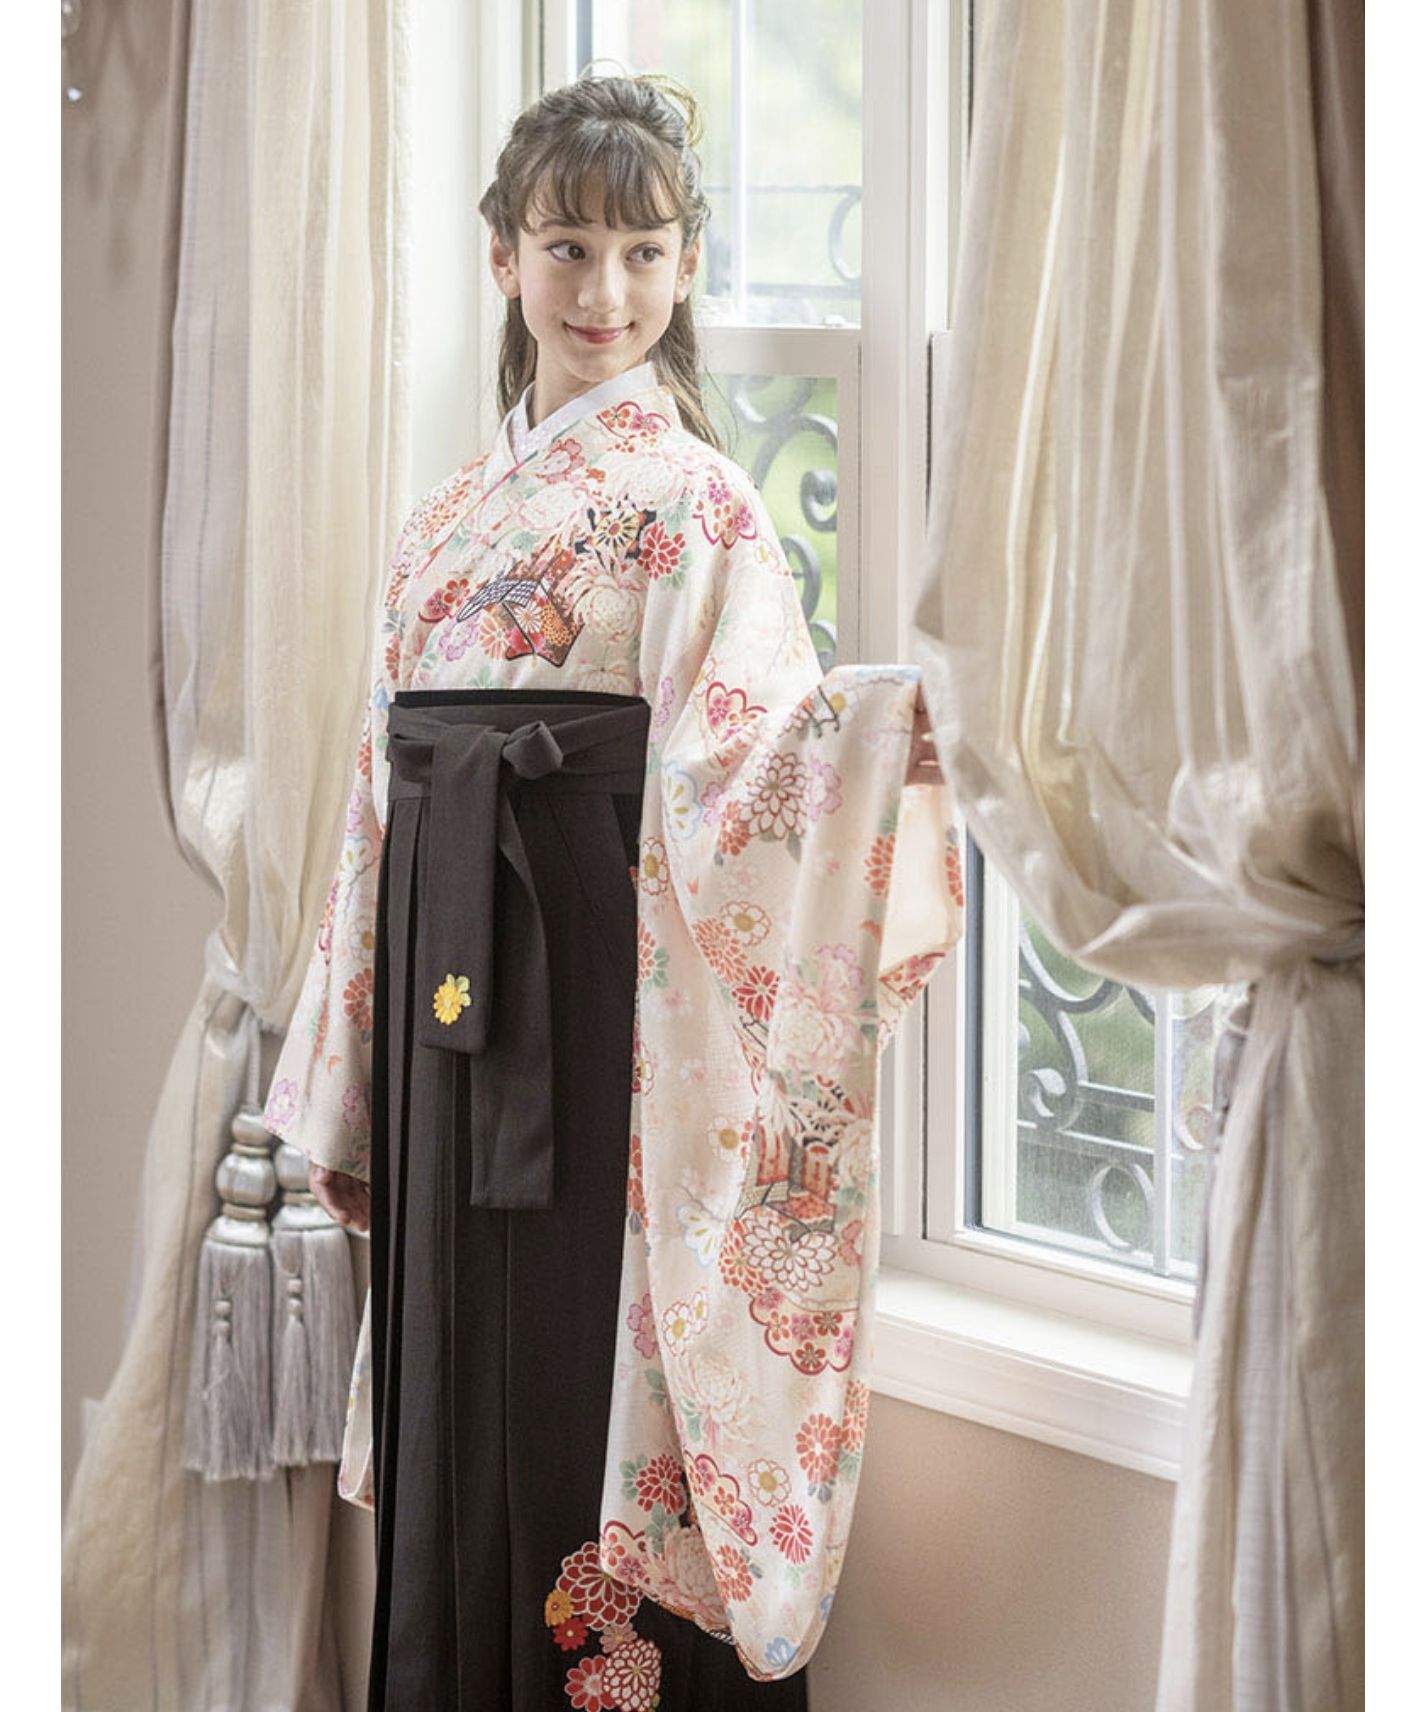 ちりめん着物と刺繍入り袴セット(504349711) | キャサリンコテージ